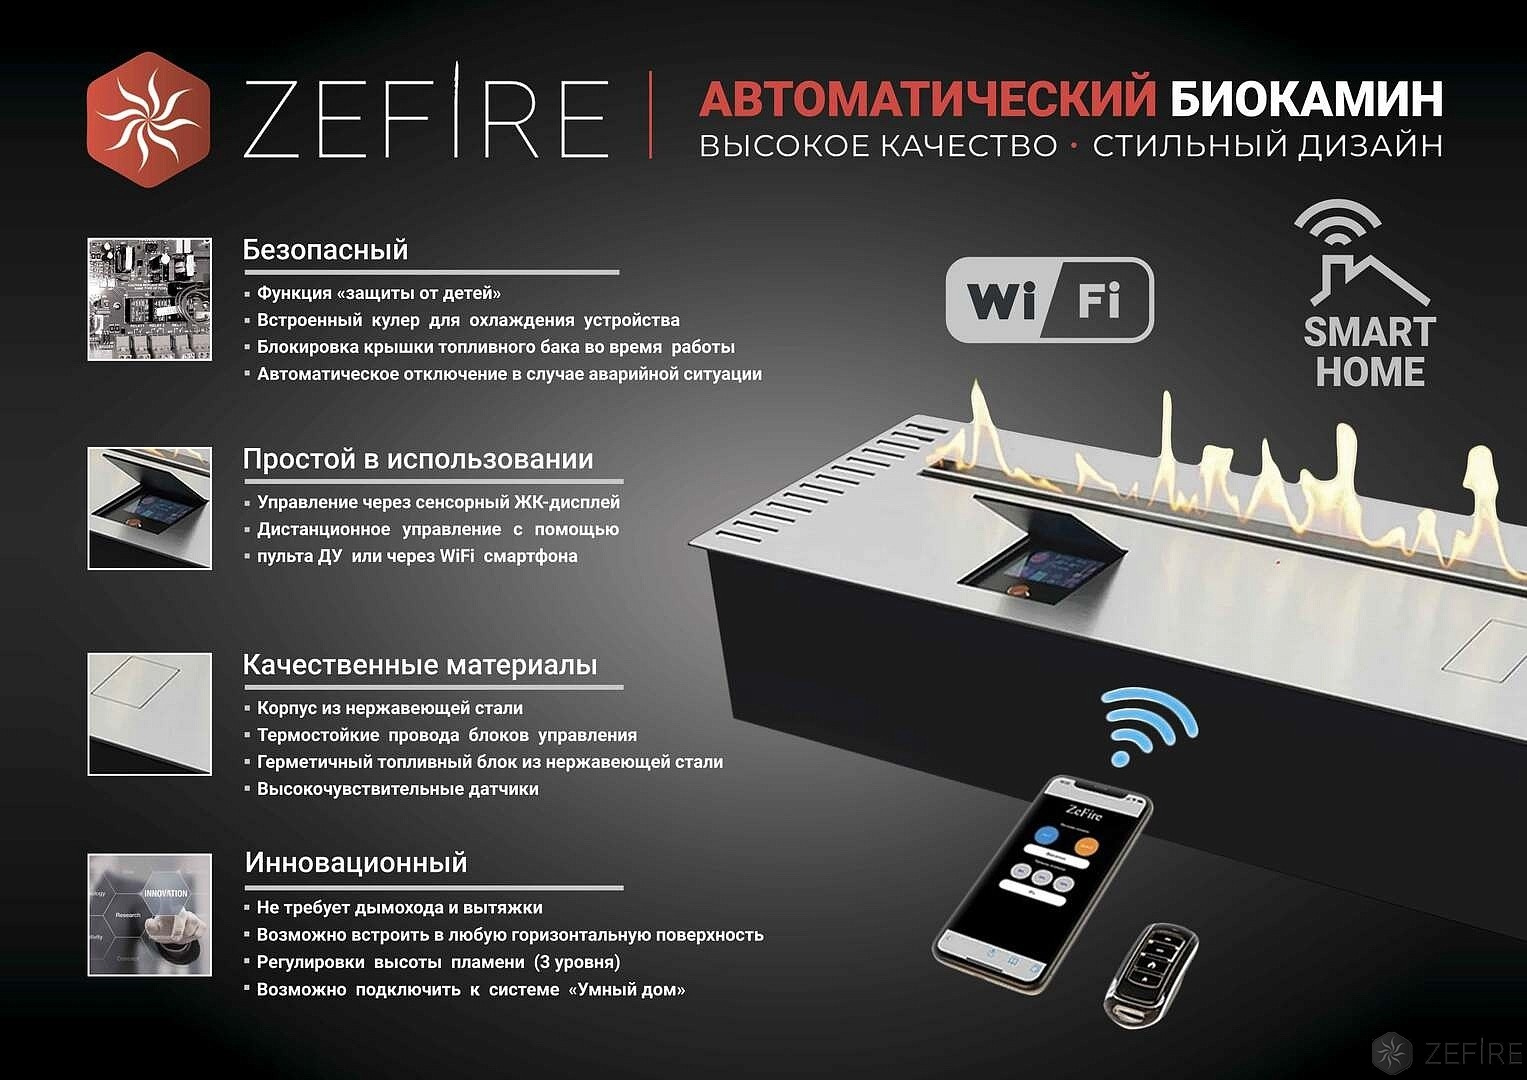 Автоматический биокамин ZeFire Automatic 900 с ДУ